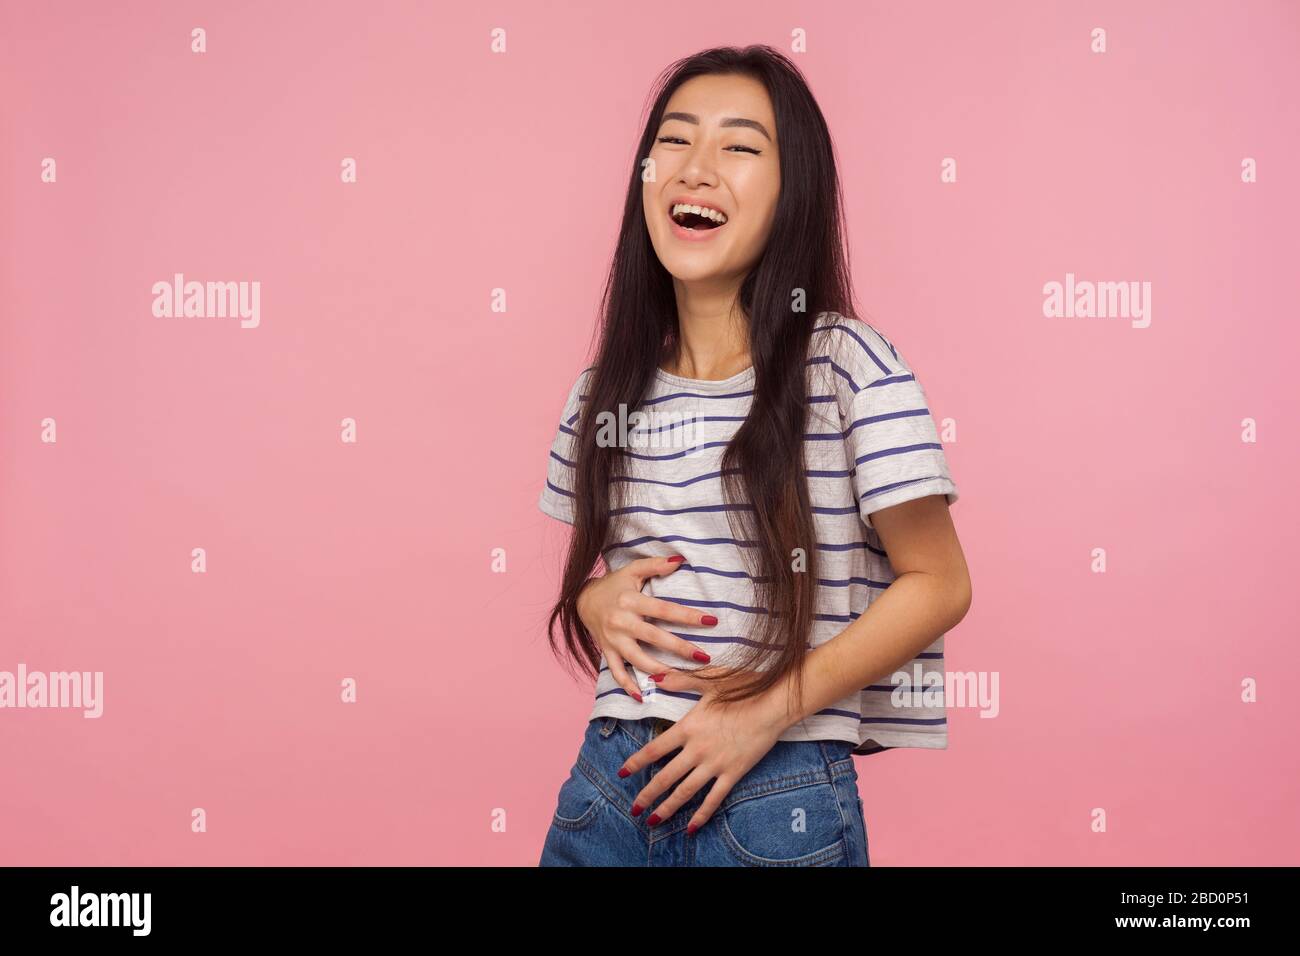 Witziger Witz! Porträt eines fröhlichen optimistischen Mädchens mit langen Haaren im gestreiften T-Shirt, das Bauch hält und laut lacht, amüsiert von albern lustigen Anecdot Stockfoto